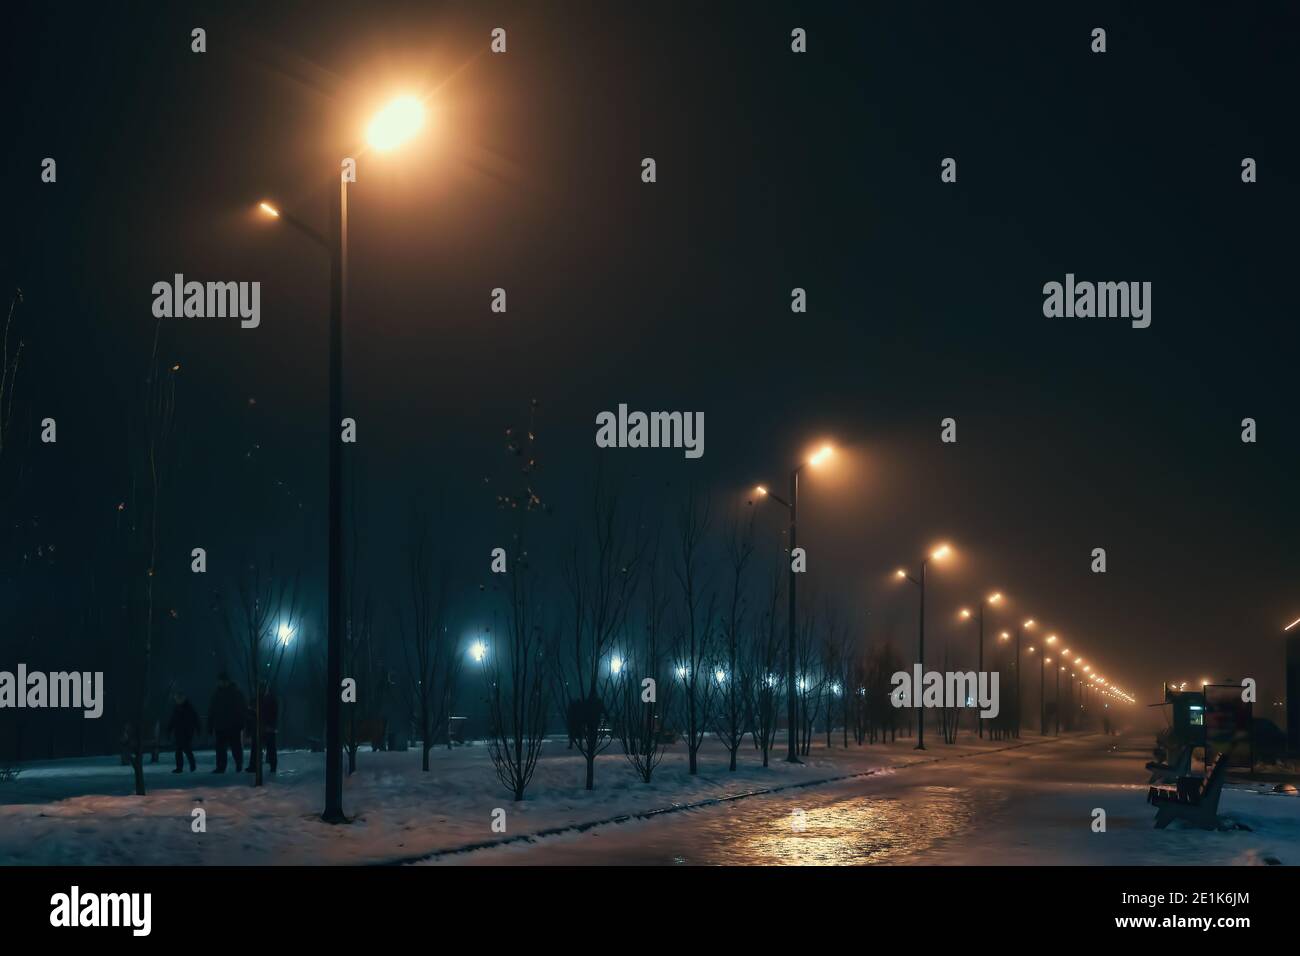 Vialetto urbano in nebbiosa notte invernale illuminato da lampioni stradali. Foto Stock